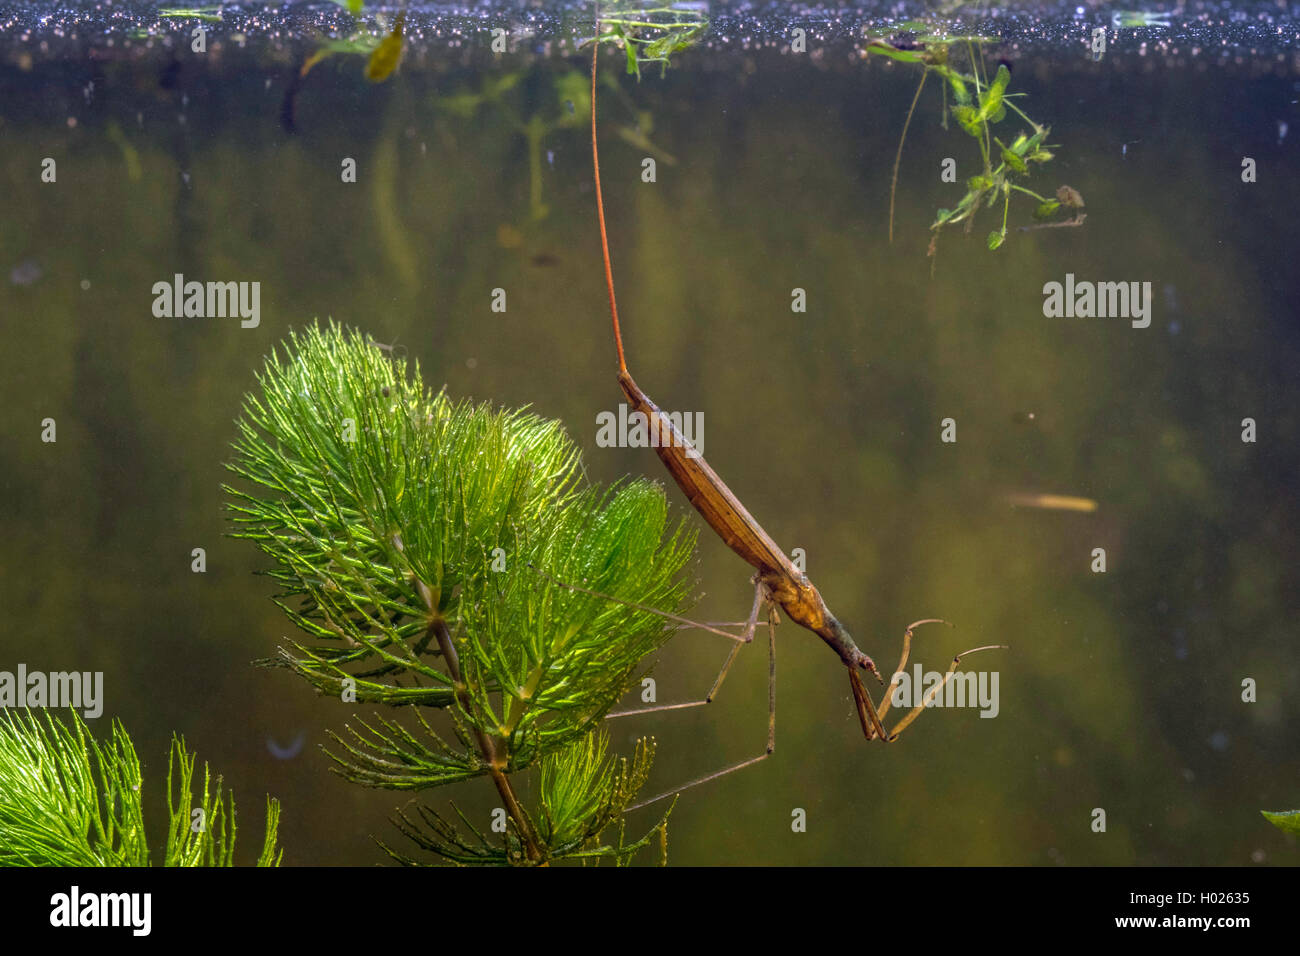 Phasme de l'eau, l'eau, corps de Scorpion aiguille chez Ranatra linearis (Bug), taling souffle avec son tube respiratoire, Allemagne Banque D'Images